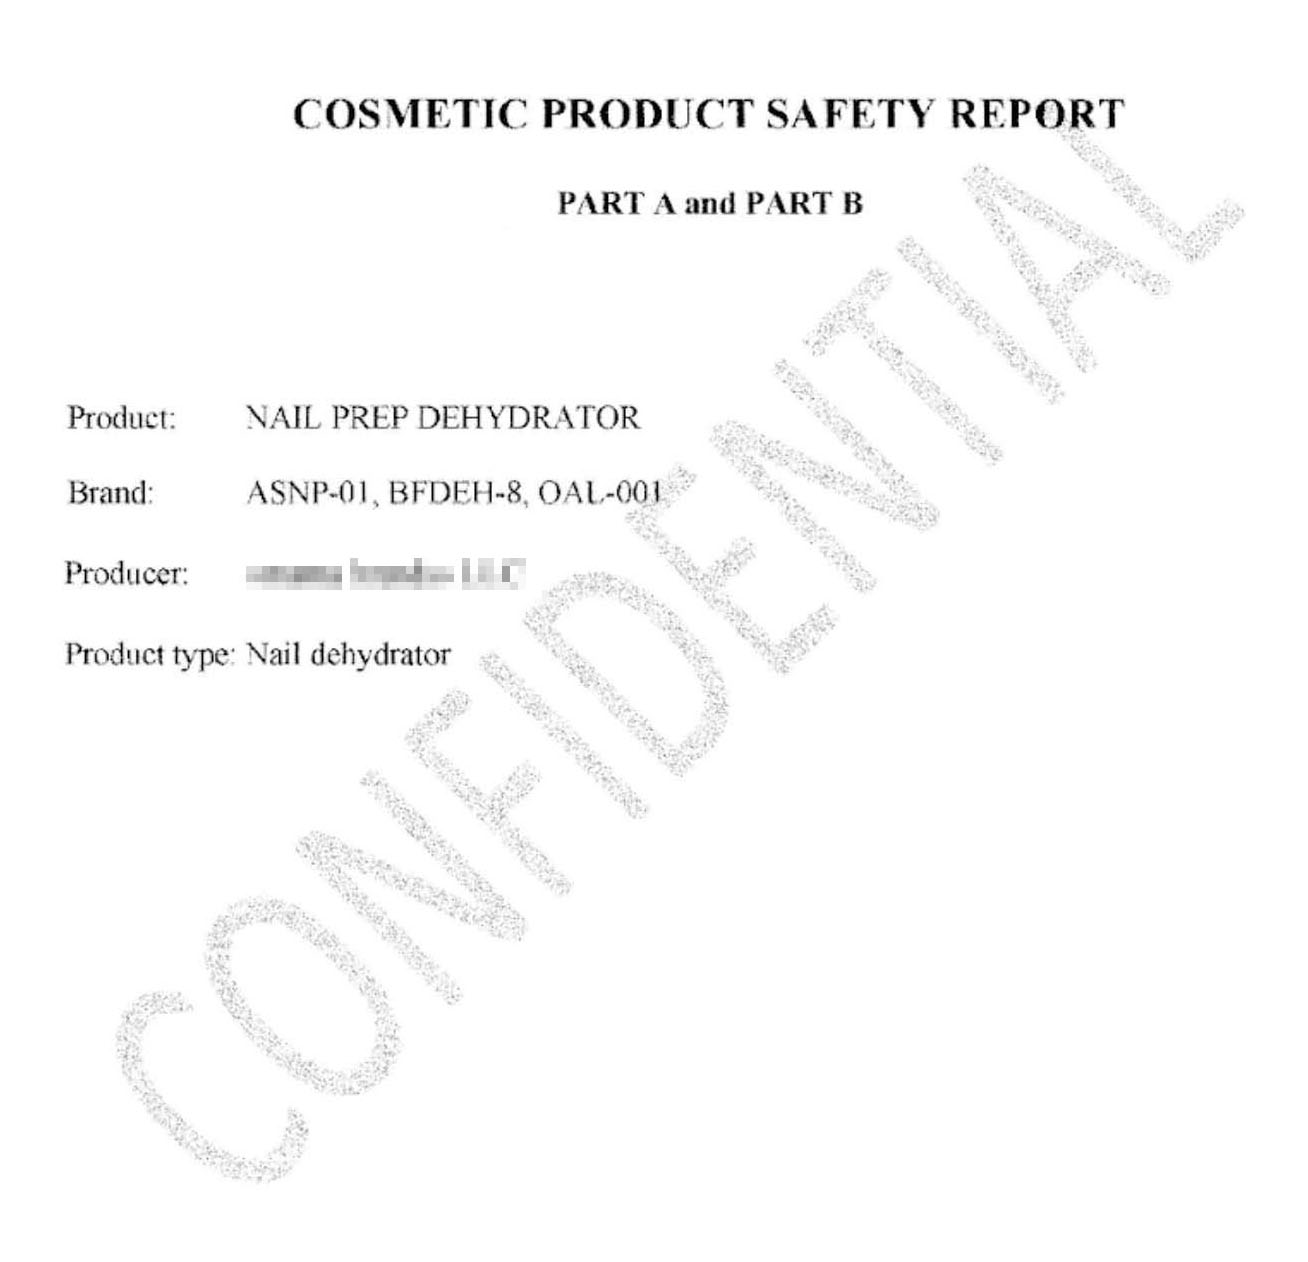 Это первая страница отчета о безопасности, на основании которого мы зарегистрировали продукцию в CPNP. Надпись по диагонали намекает, что документ строго конфиденциален, поэтому показать его содержимое я не могу